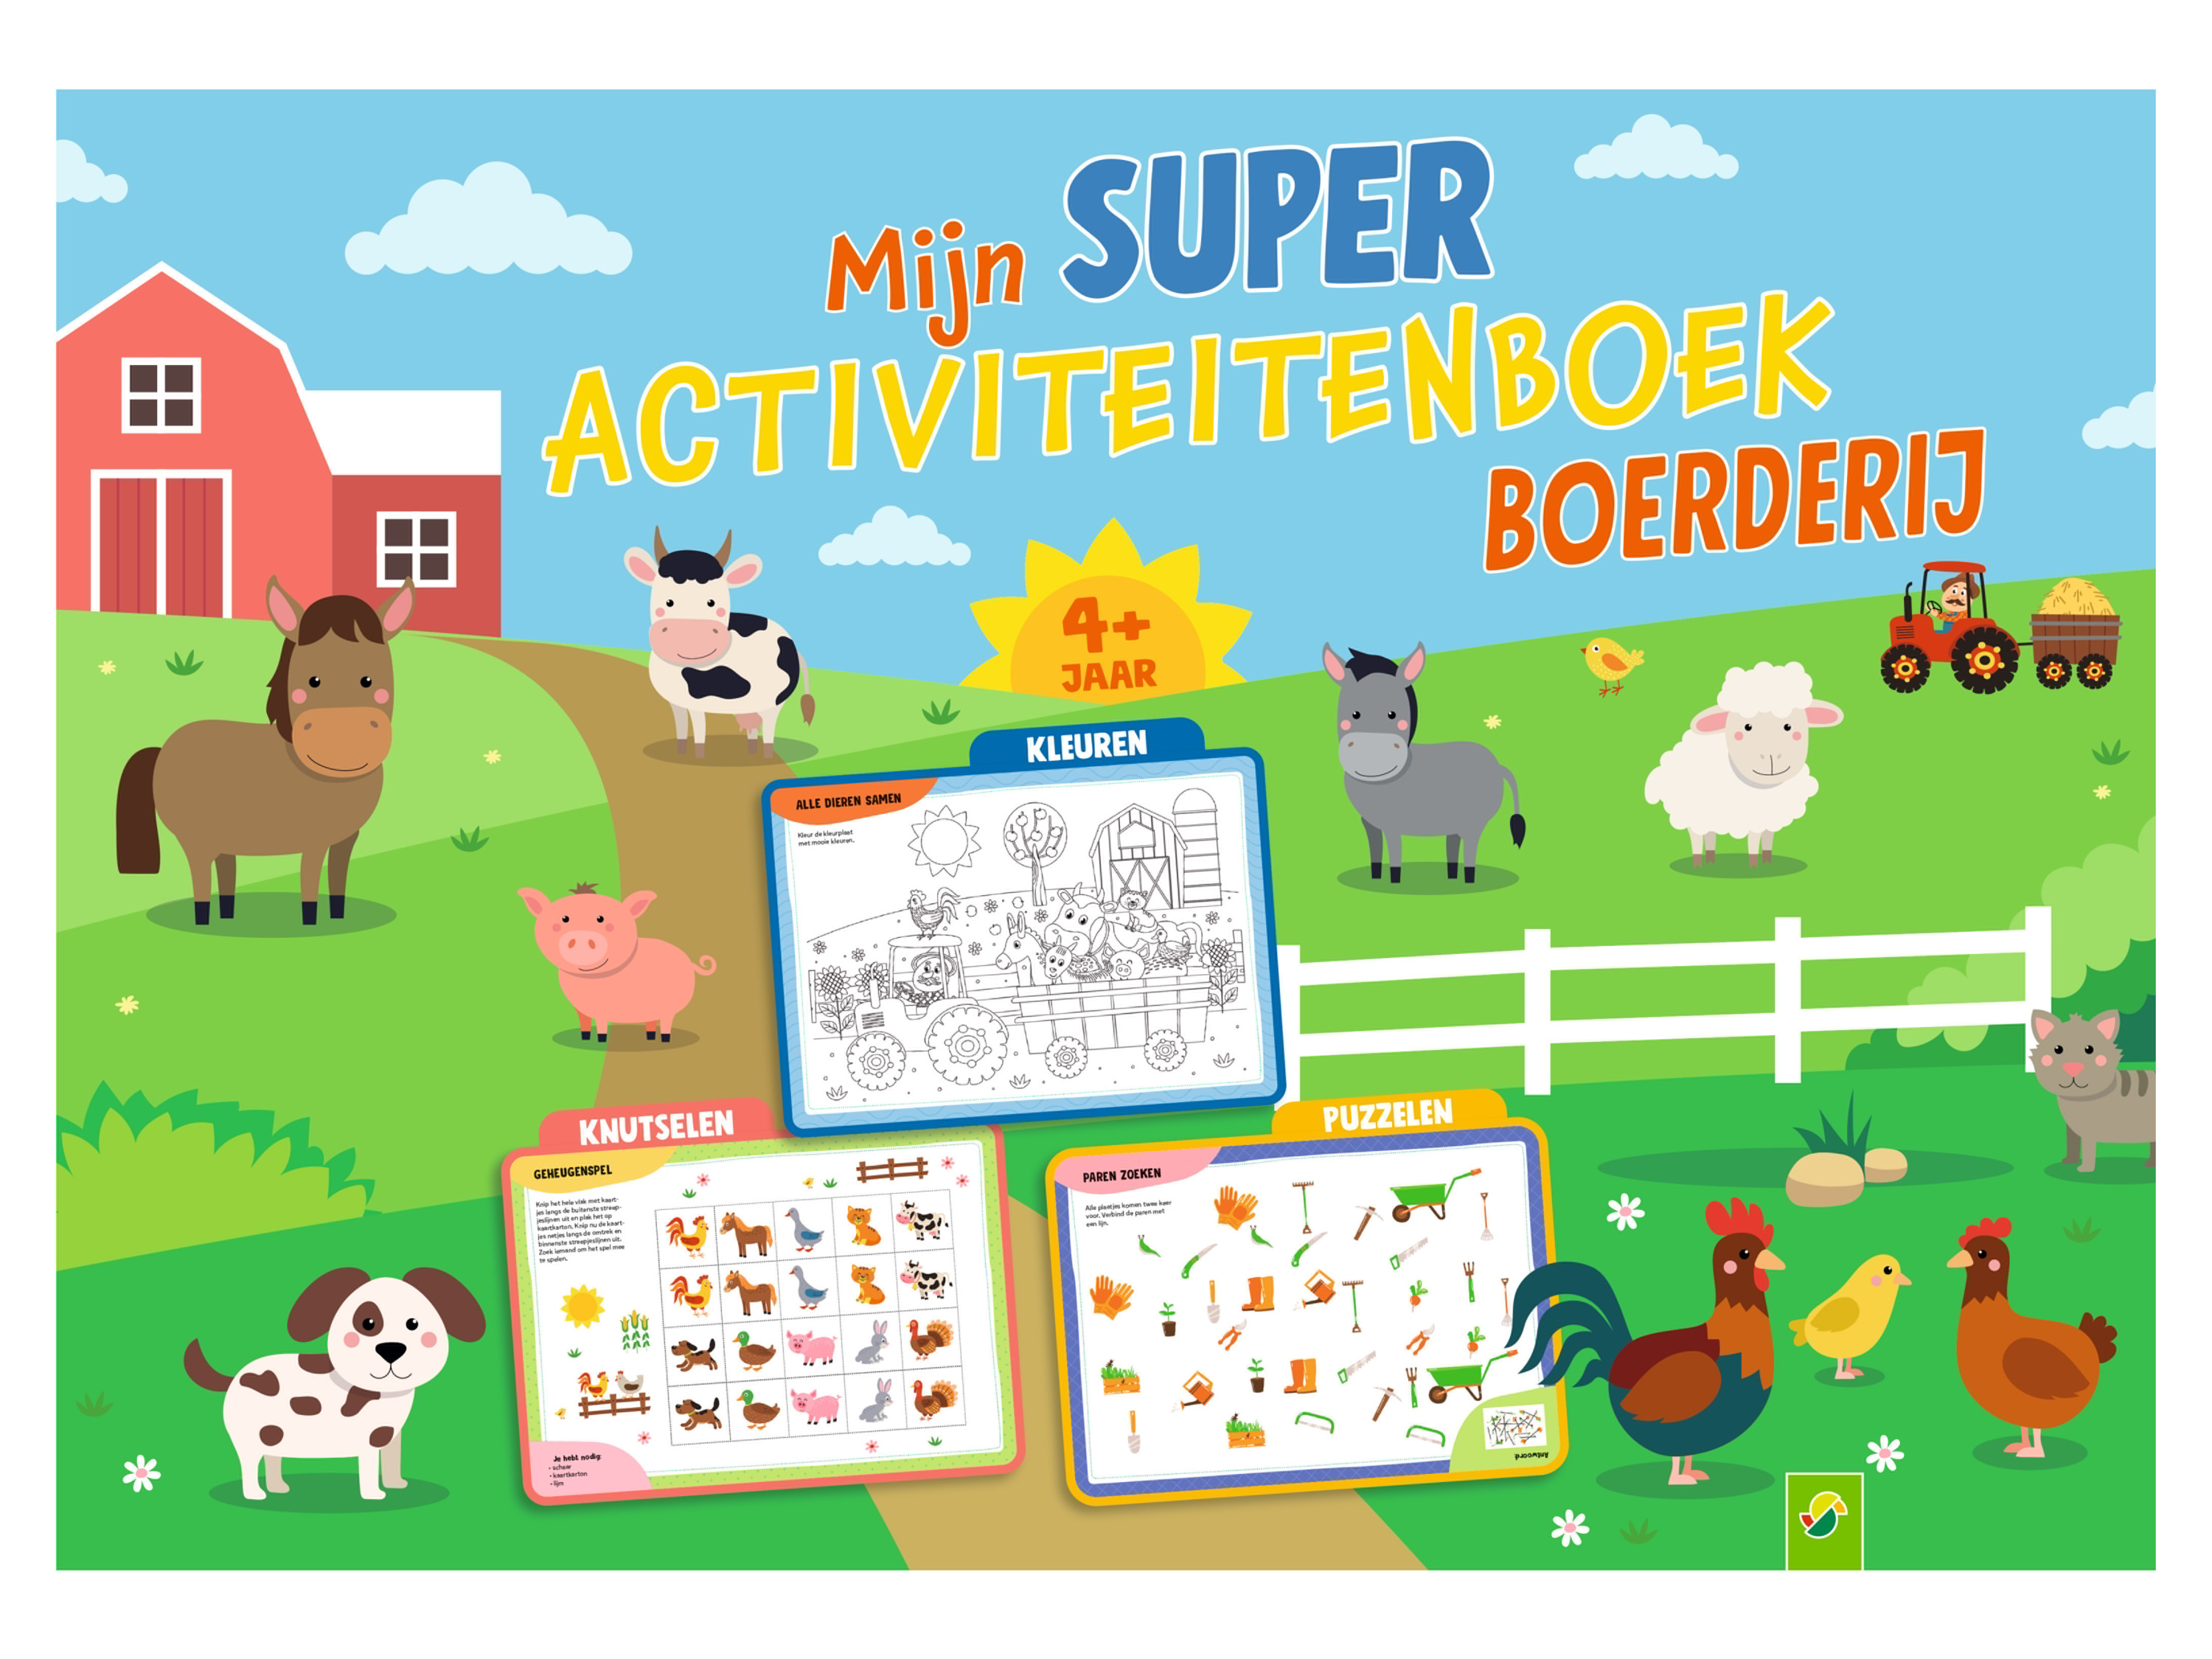 Activiteitenboek voor kinderen (XXL boerderij)